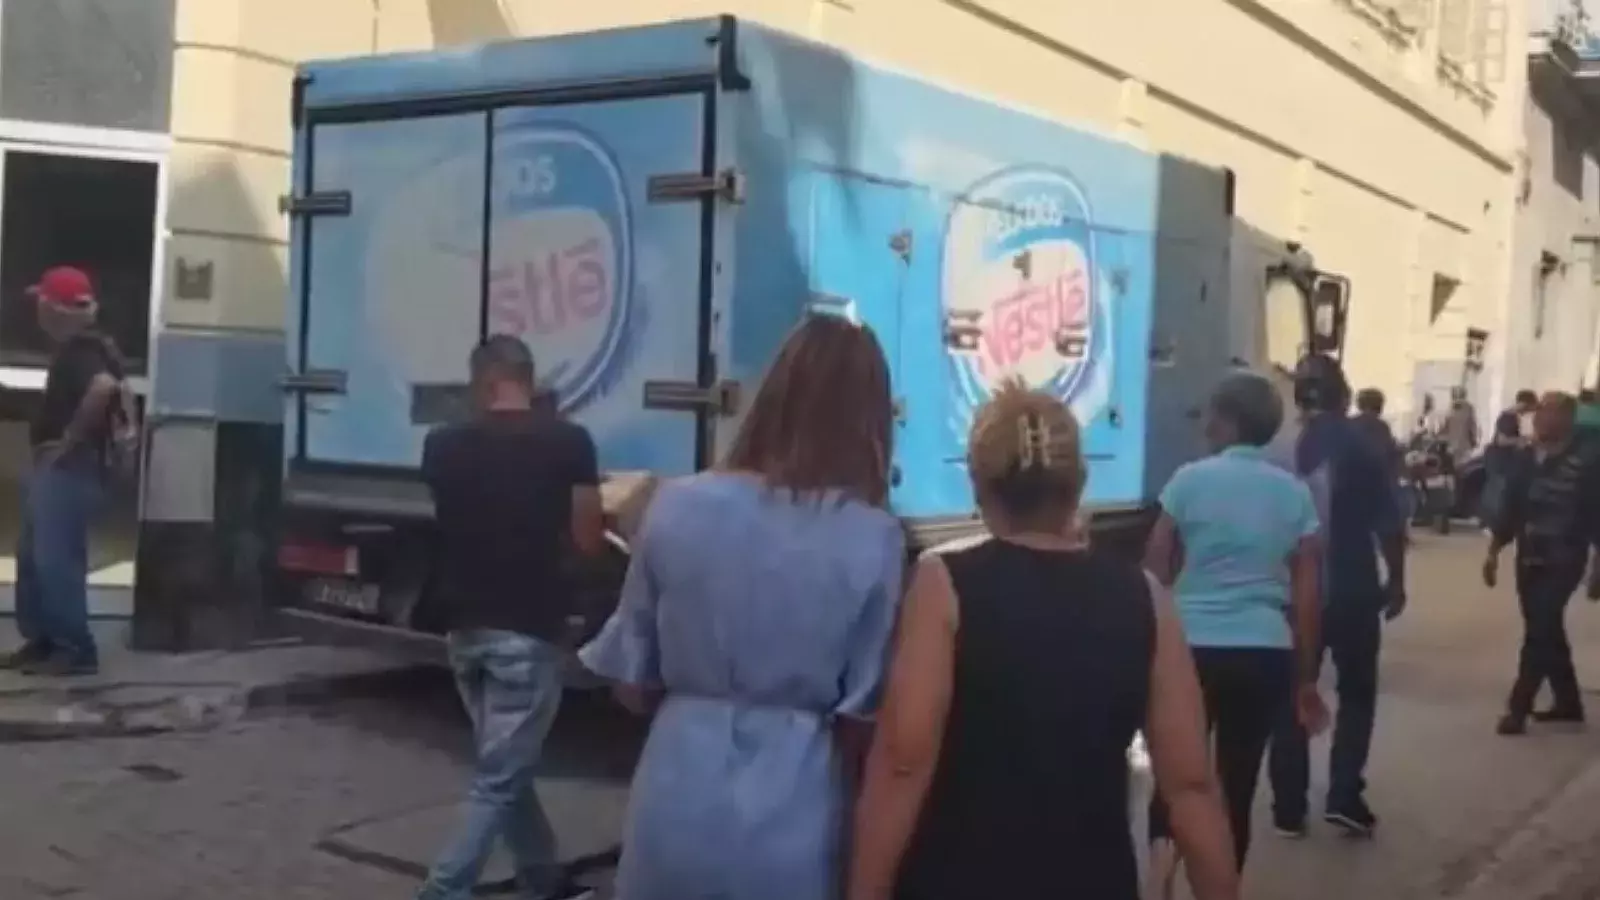 Carro del helado se pasea por La Habana